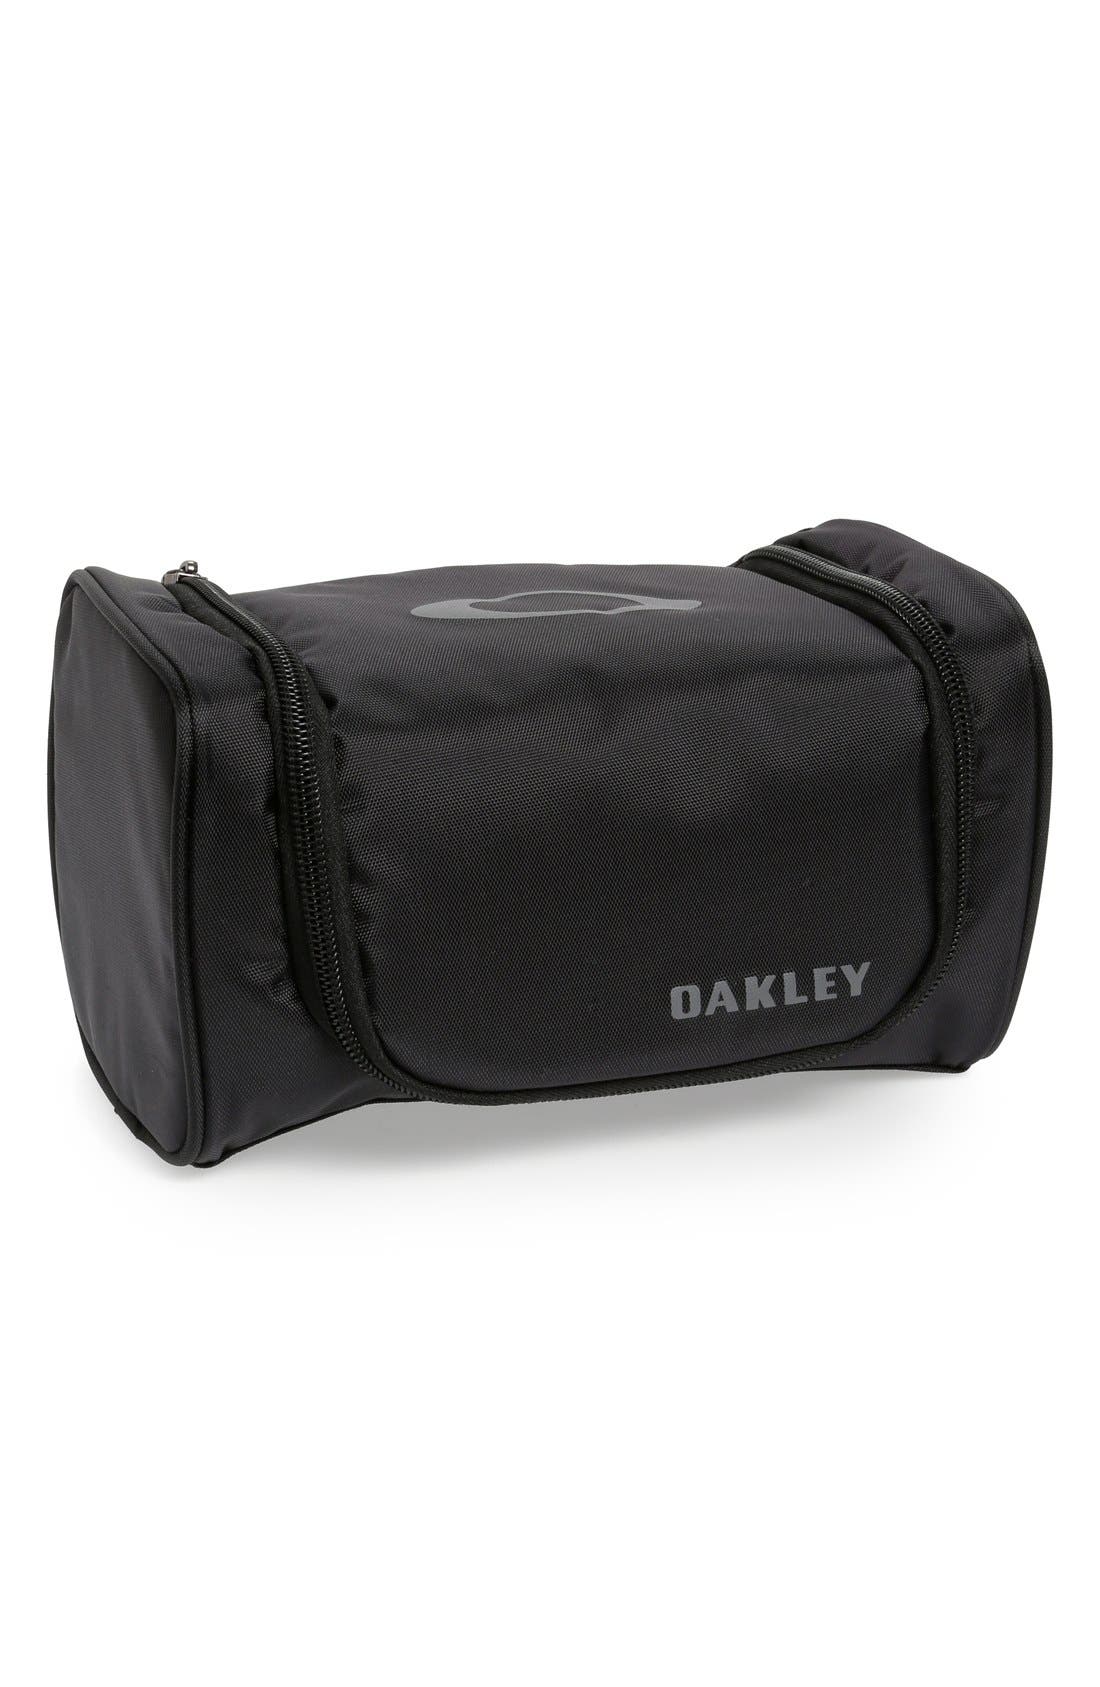 oakley soft goggle case